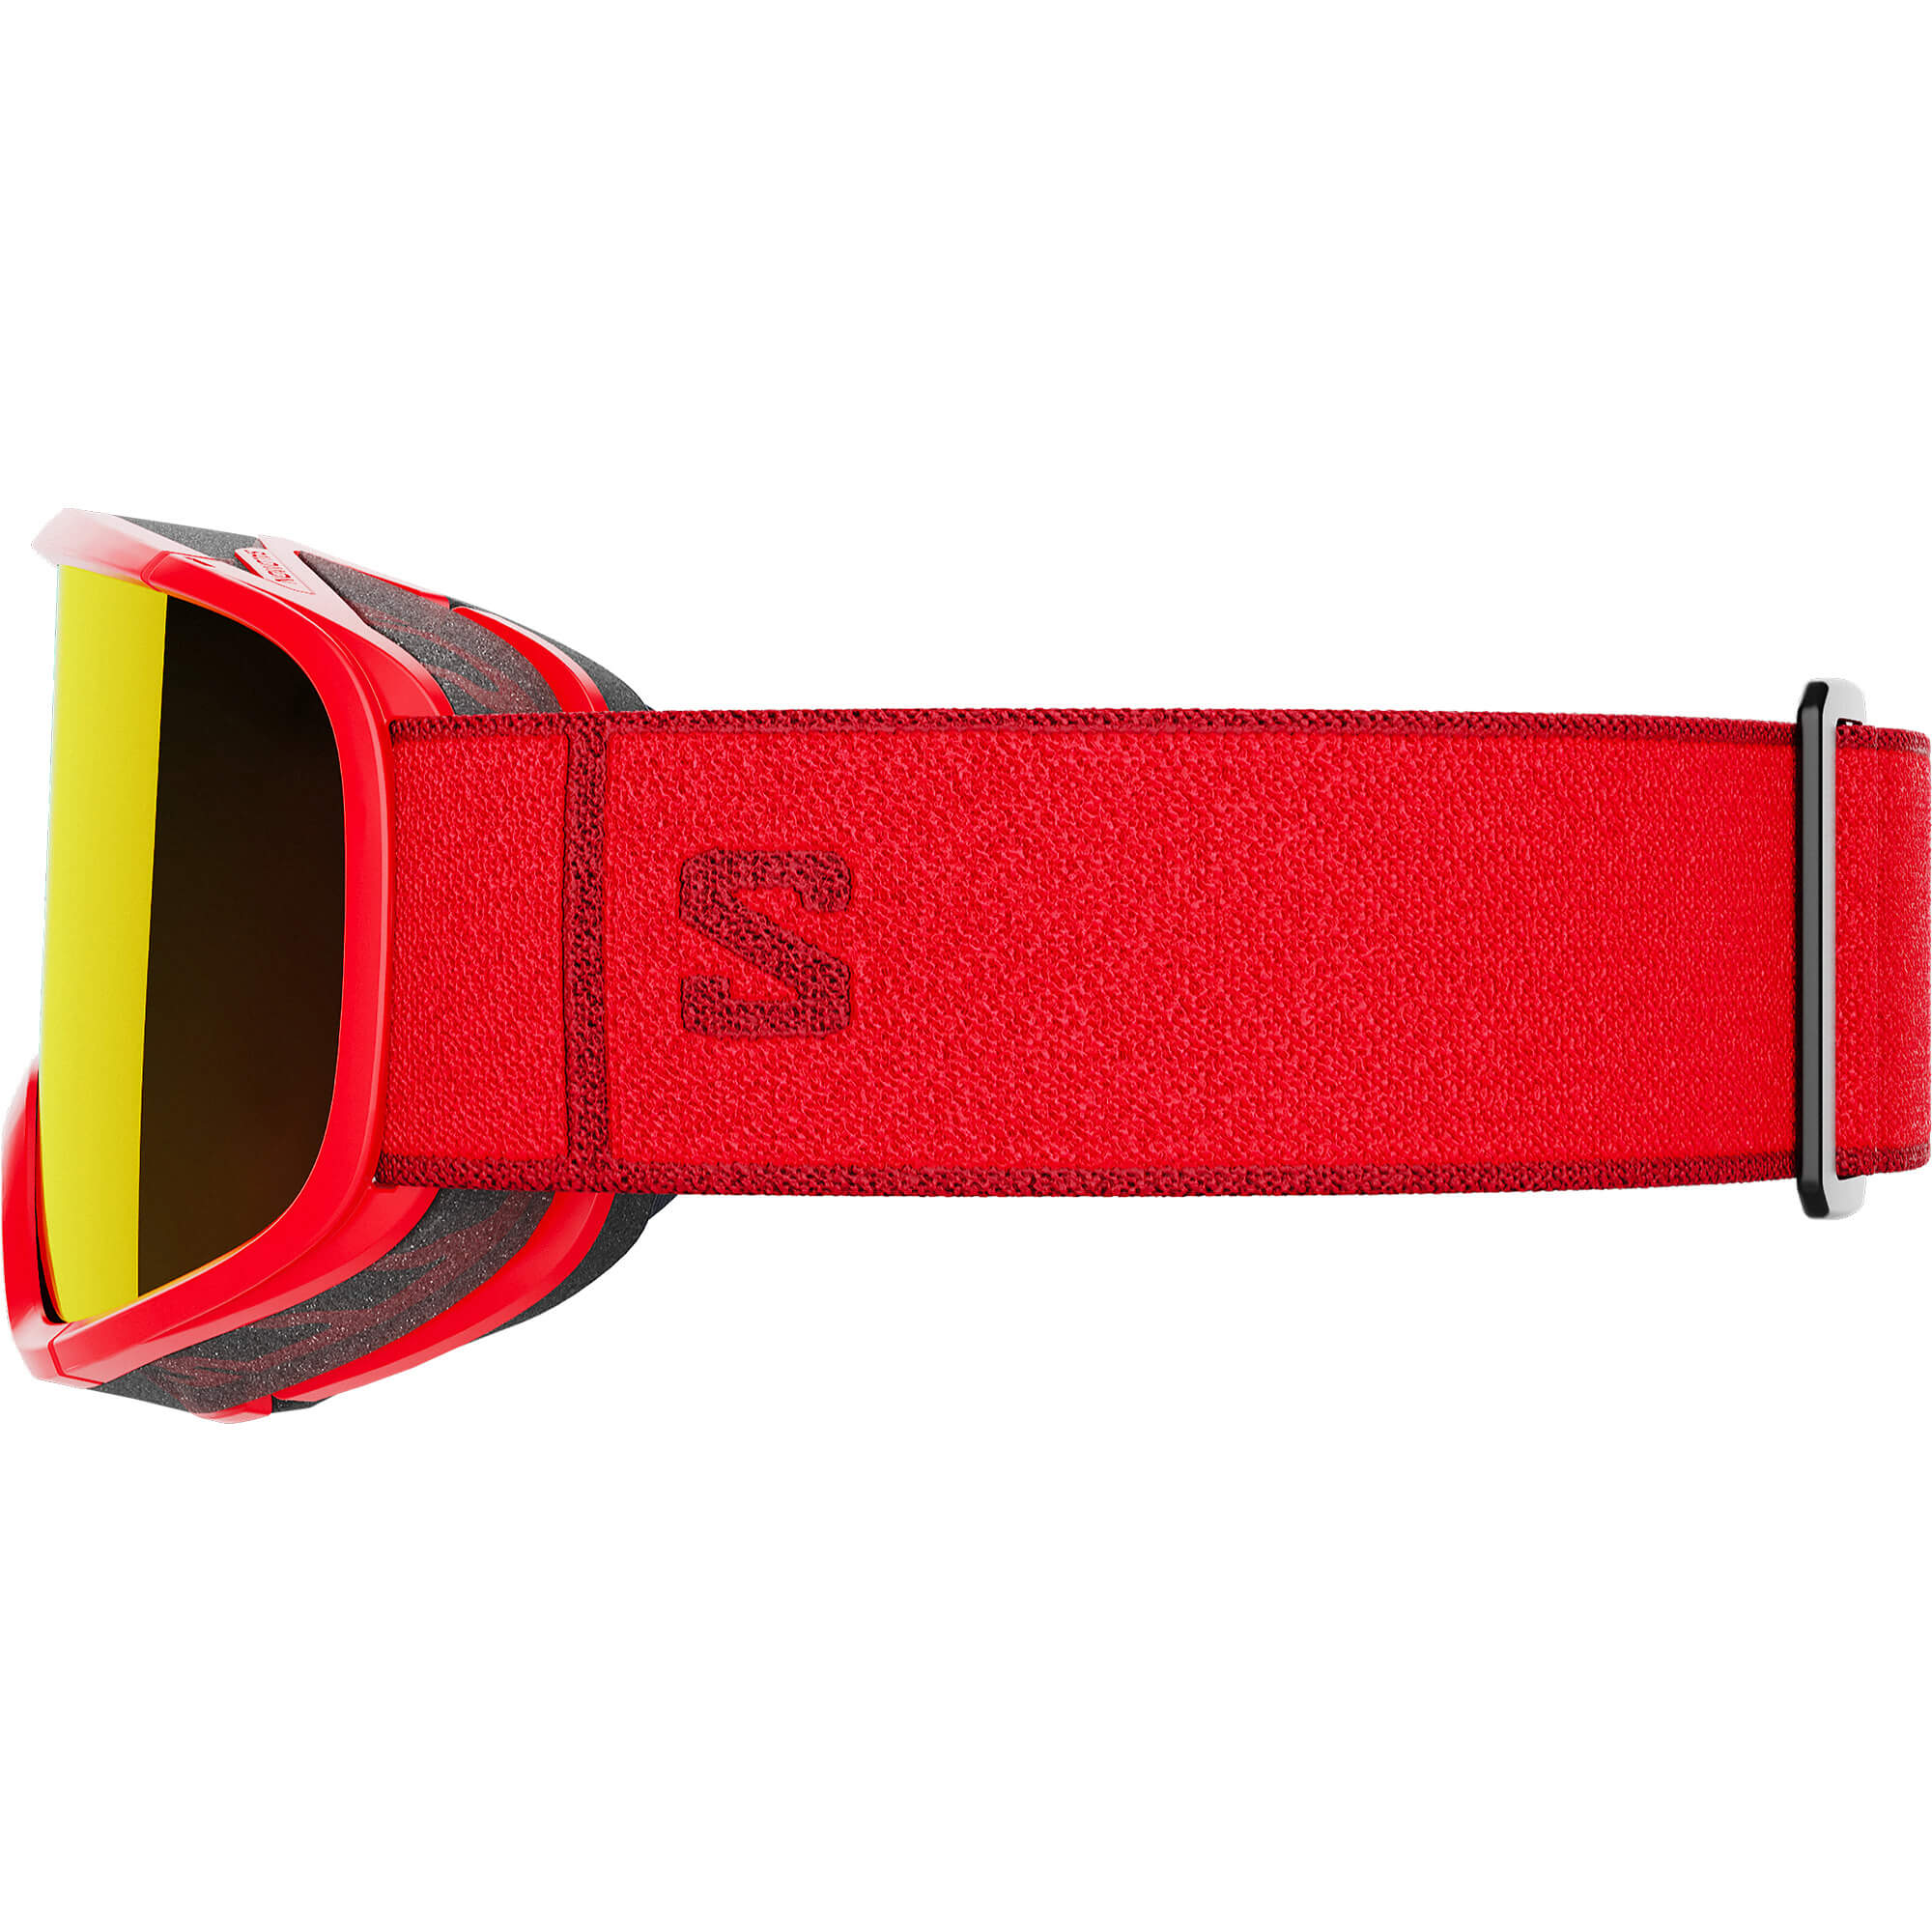 Salomon Aksium 2.0 Snowboard/Ski Goggles